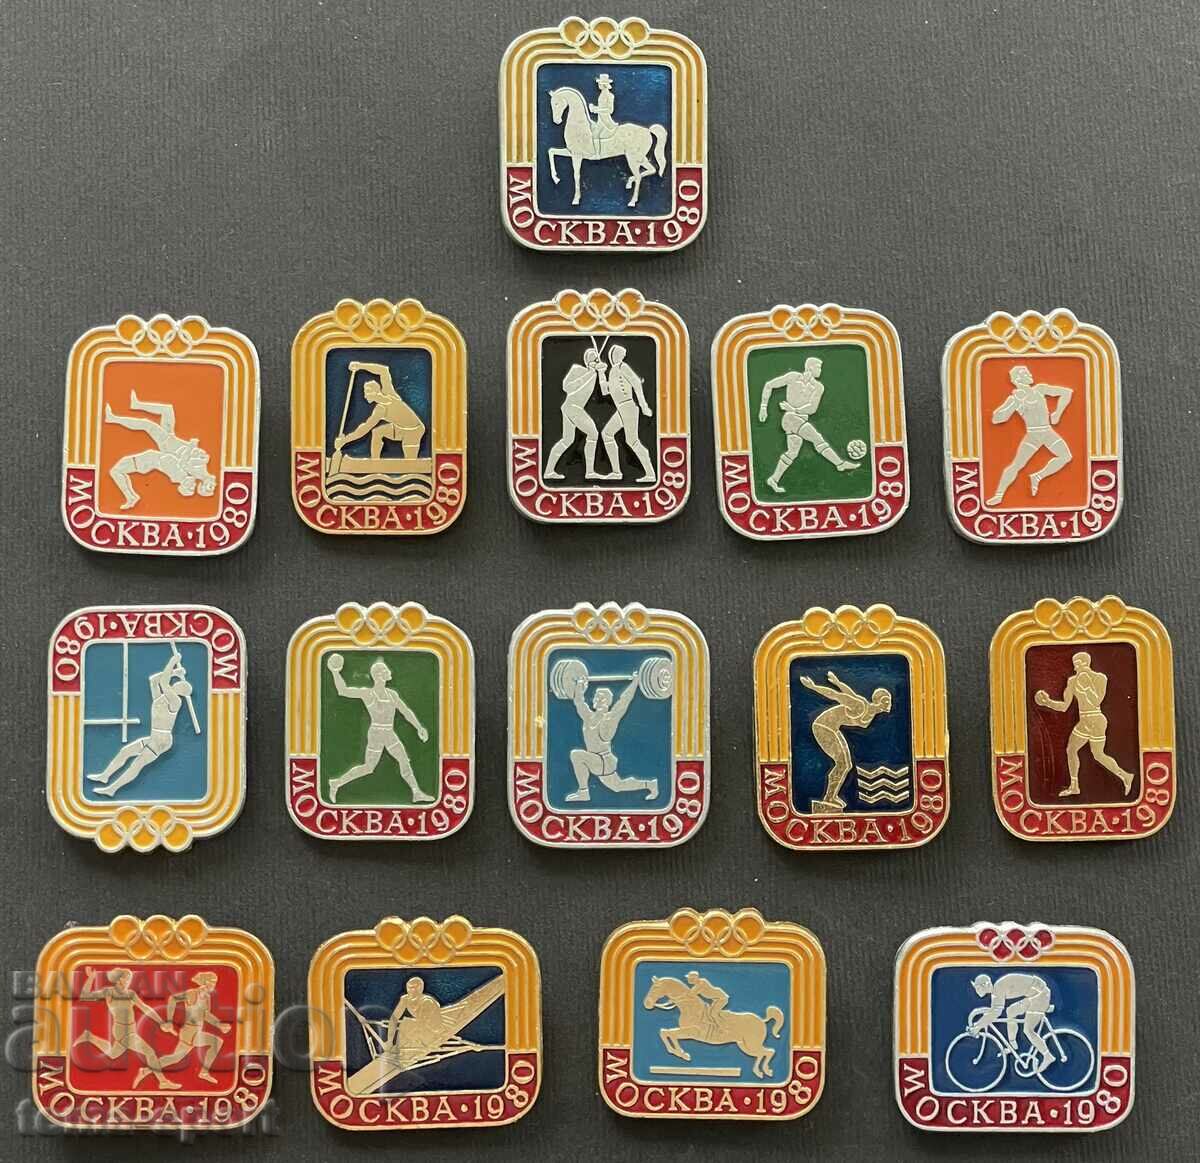 484 παρτίδα ΕΣΣΔ με 15 Ολυμπιακά σήματα Ολυμπιακοί Αγώνες Μόσχα 1980.